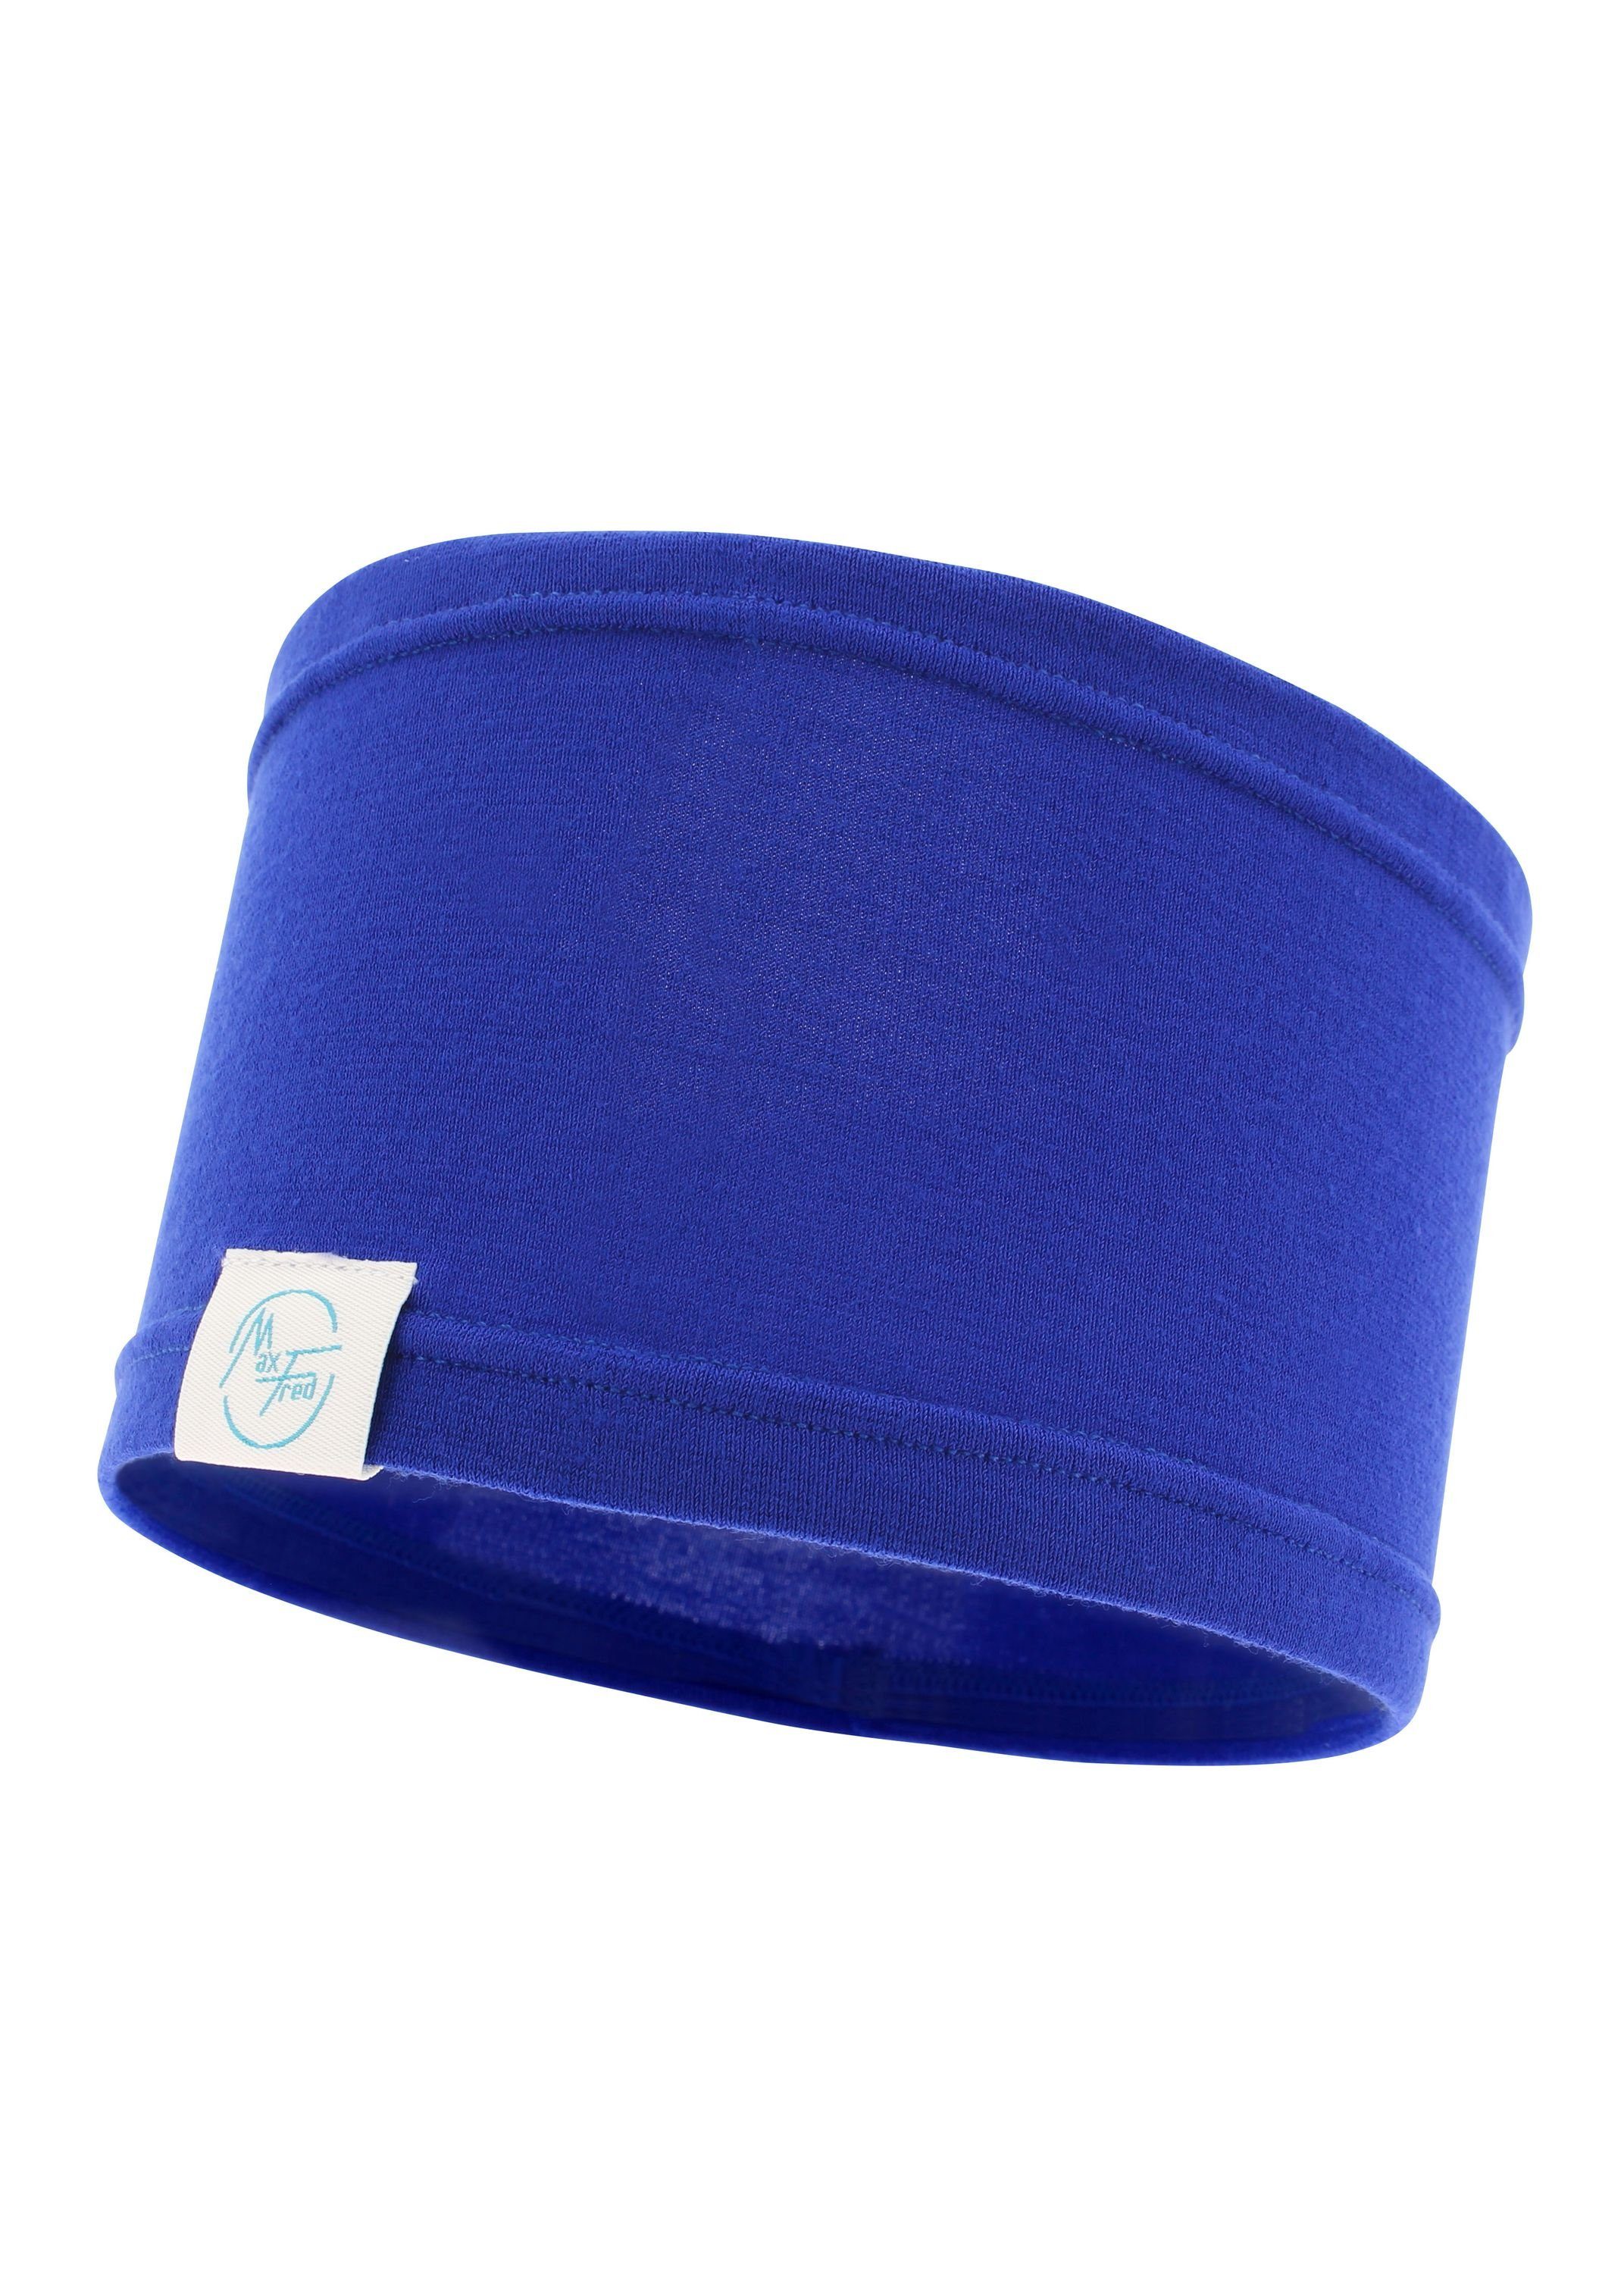 Damen Stirnbänder Maxfred Stirnband Bamboo ocean blue Multifunktionstuch Elastisch, Nachhaltig, geringe Geruchsaufnahme, Ultrawe